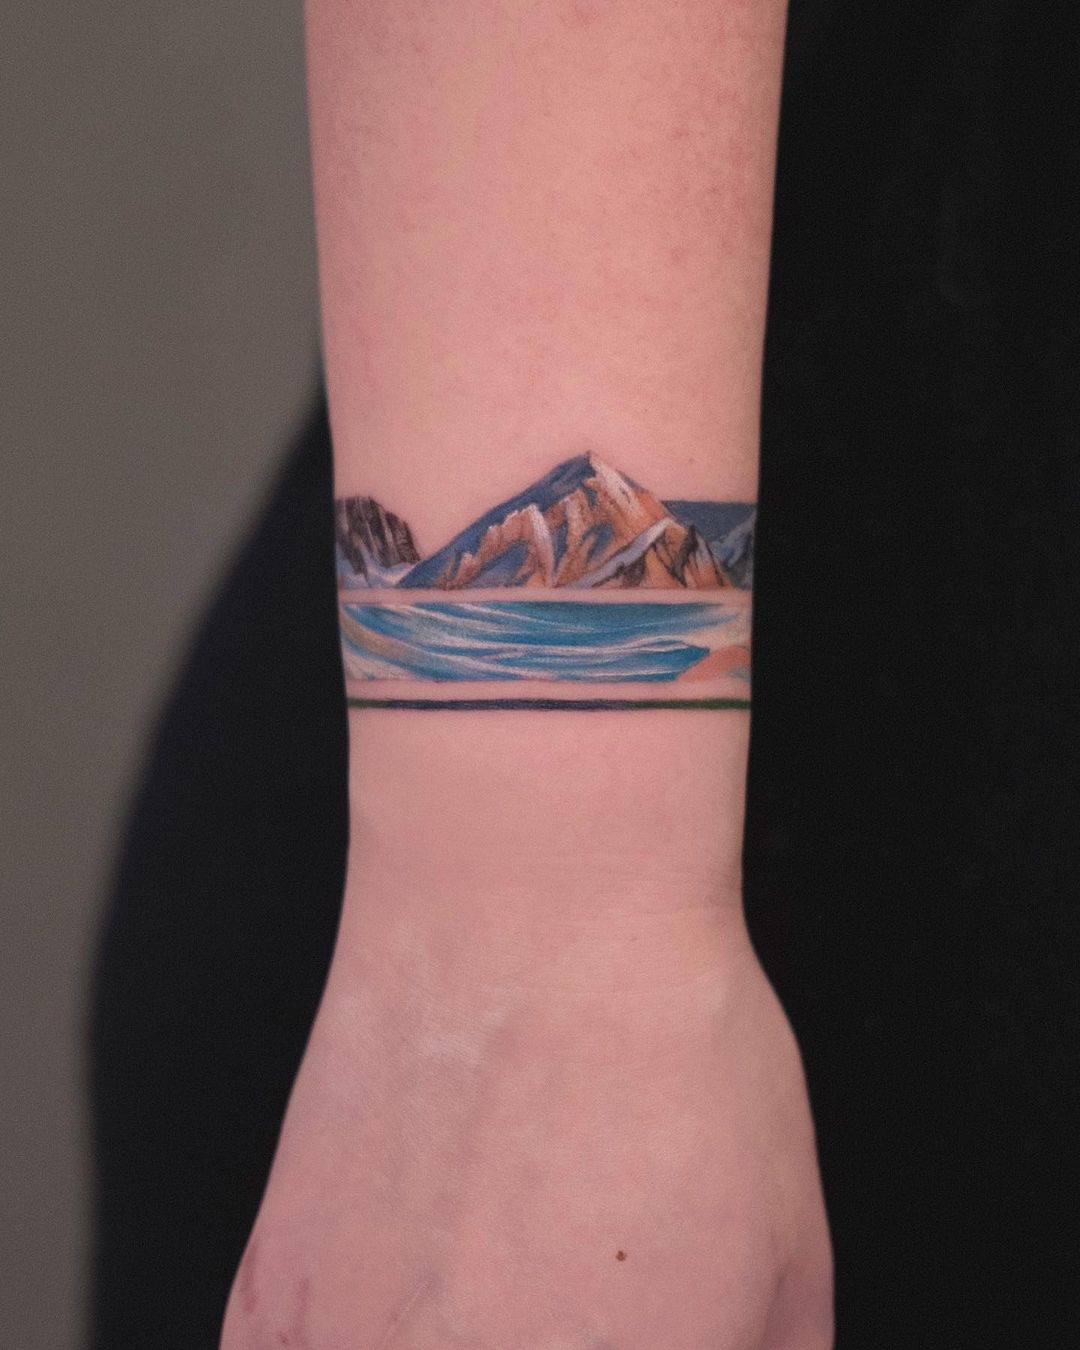 Minimalistic mountain tattoo design by newtattoo demi